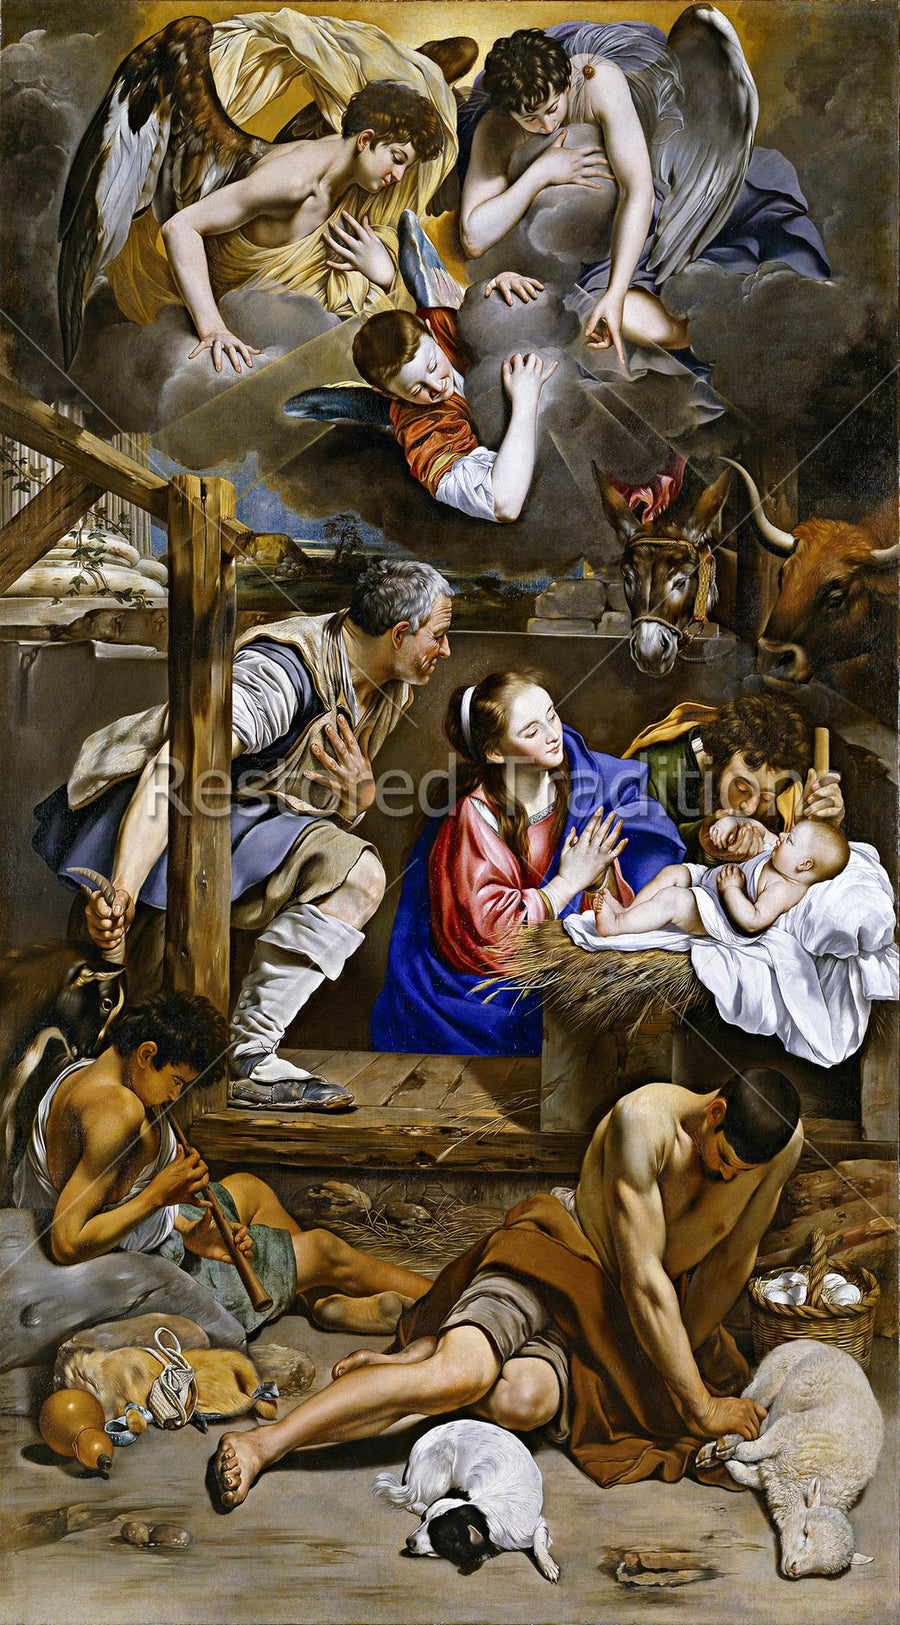 Nativity of the Child in Bethlehem